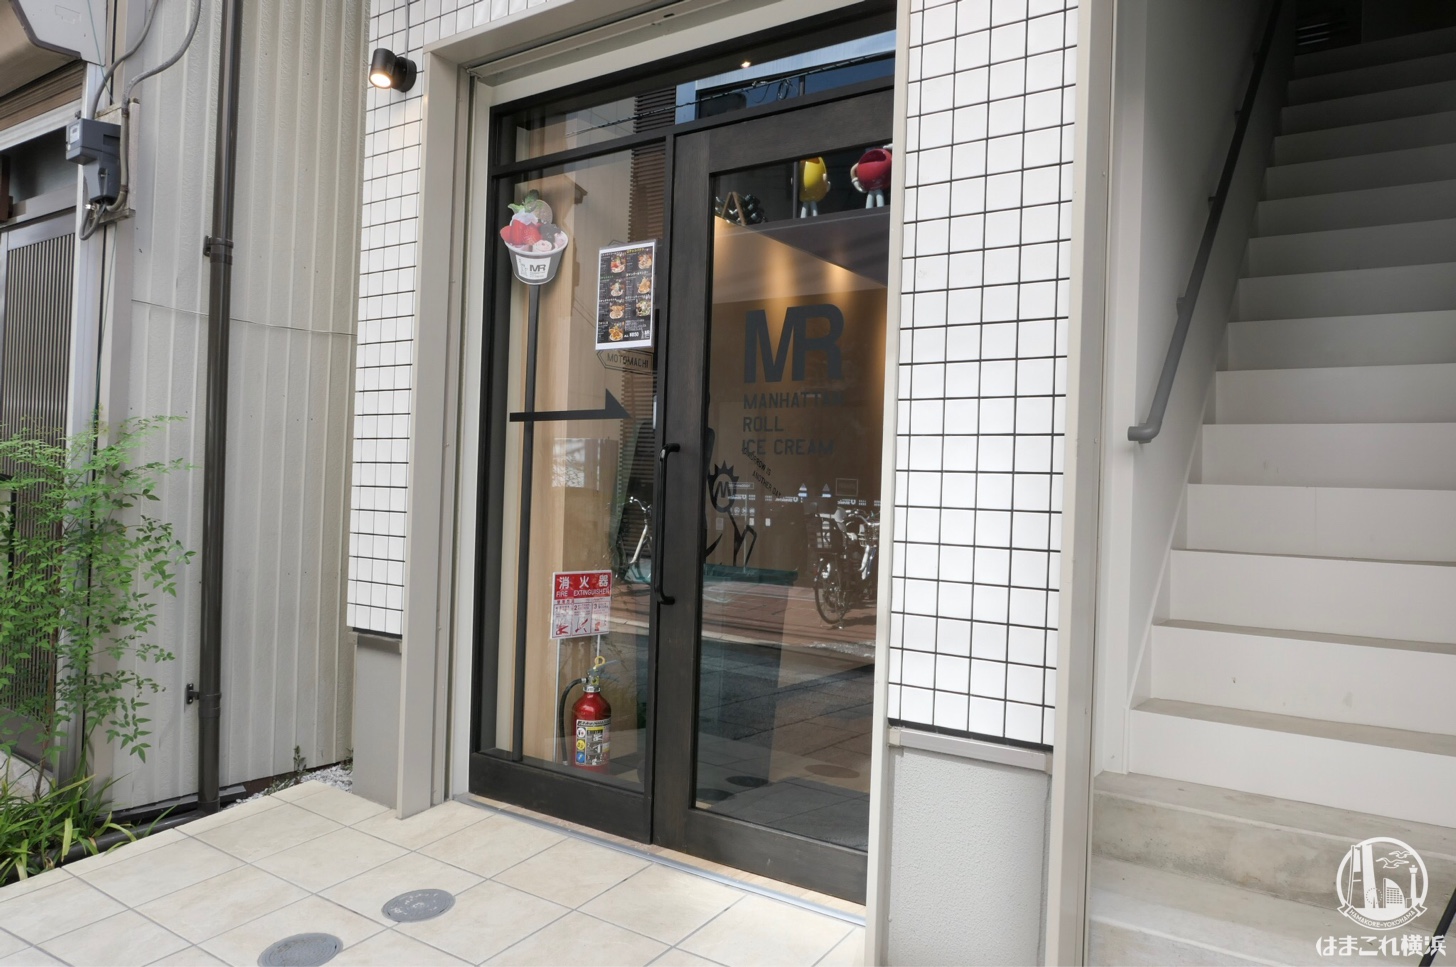 マンハッタンロールアイスクリーム 横浜元町店